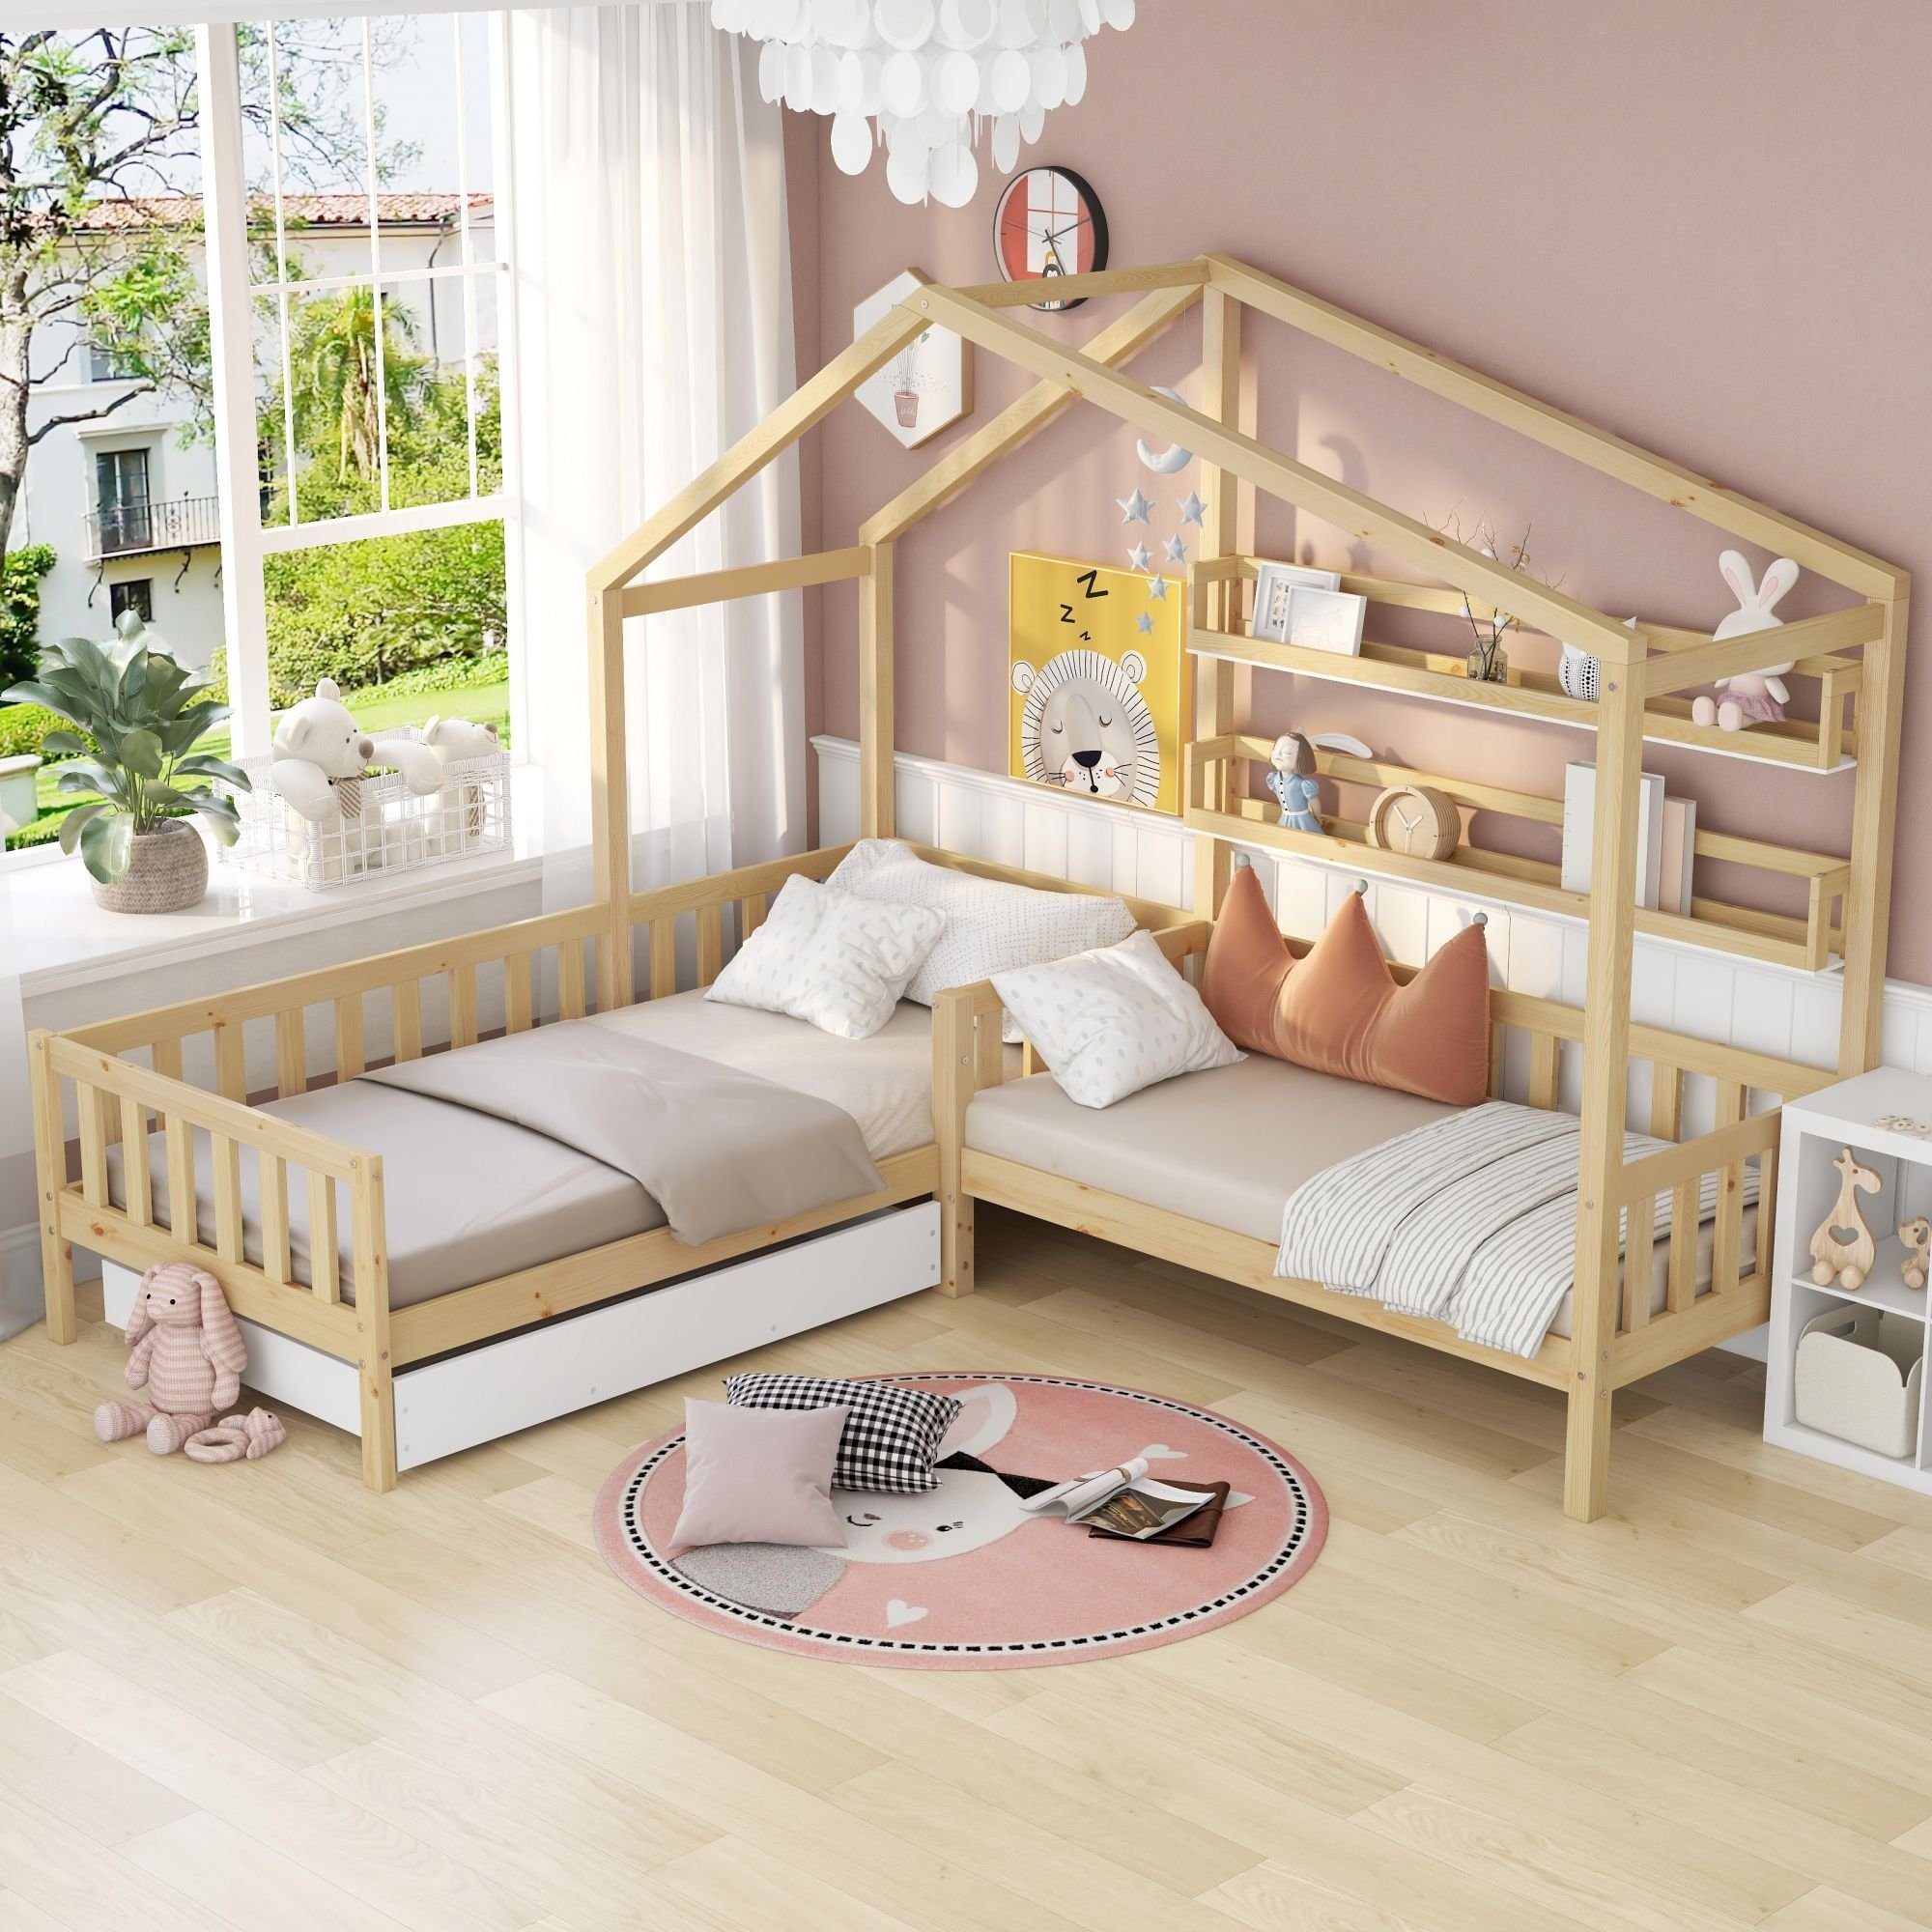 Ulife Jugendbett Kinderbett Hausbett mit Schubladen und Regale L-Struktur, 90x200cm+70x140cm